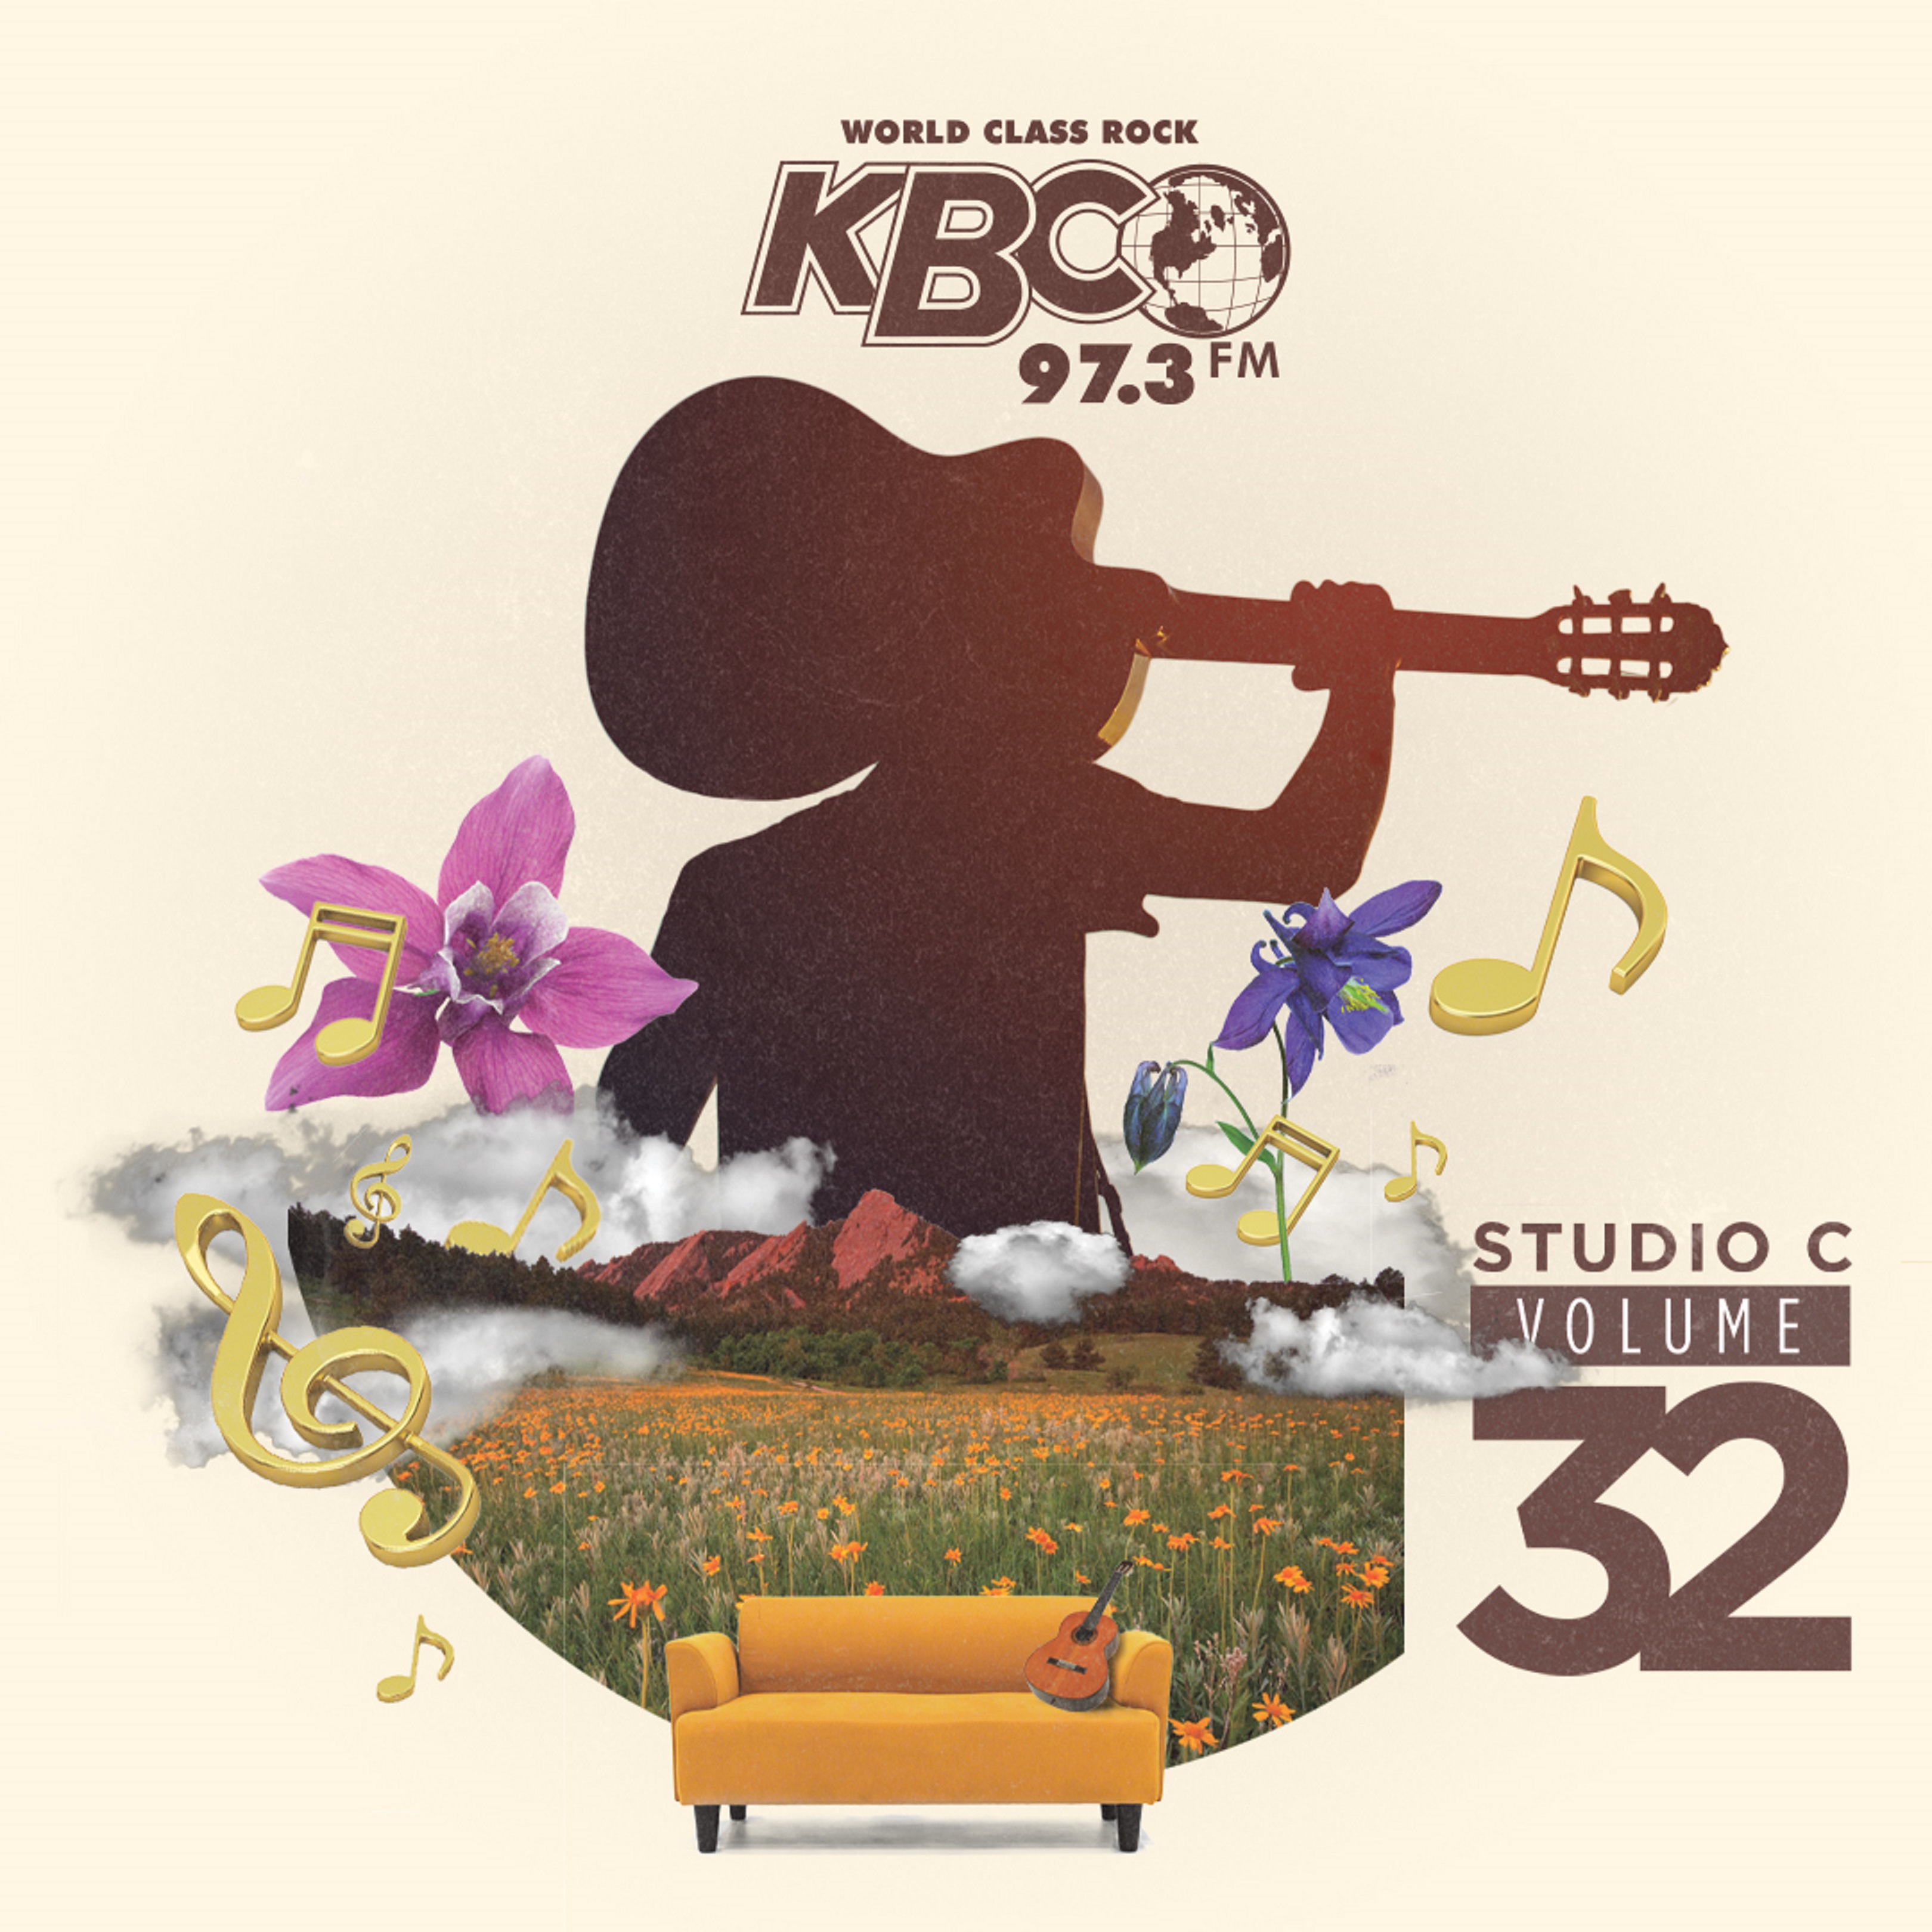 KBCO Announces Studio C Volume 32